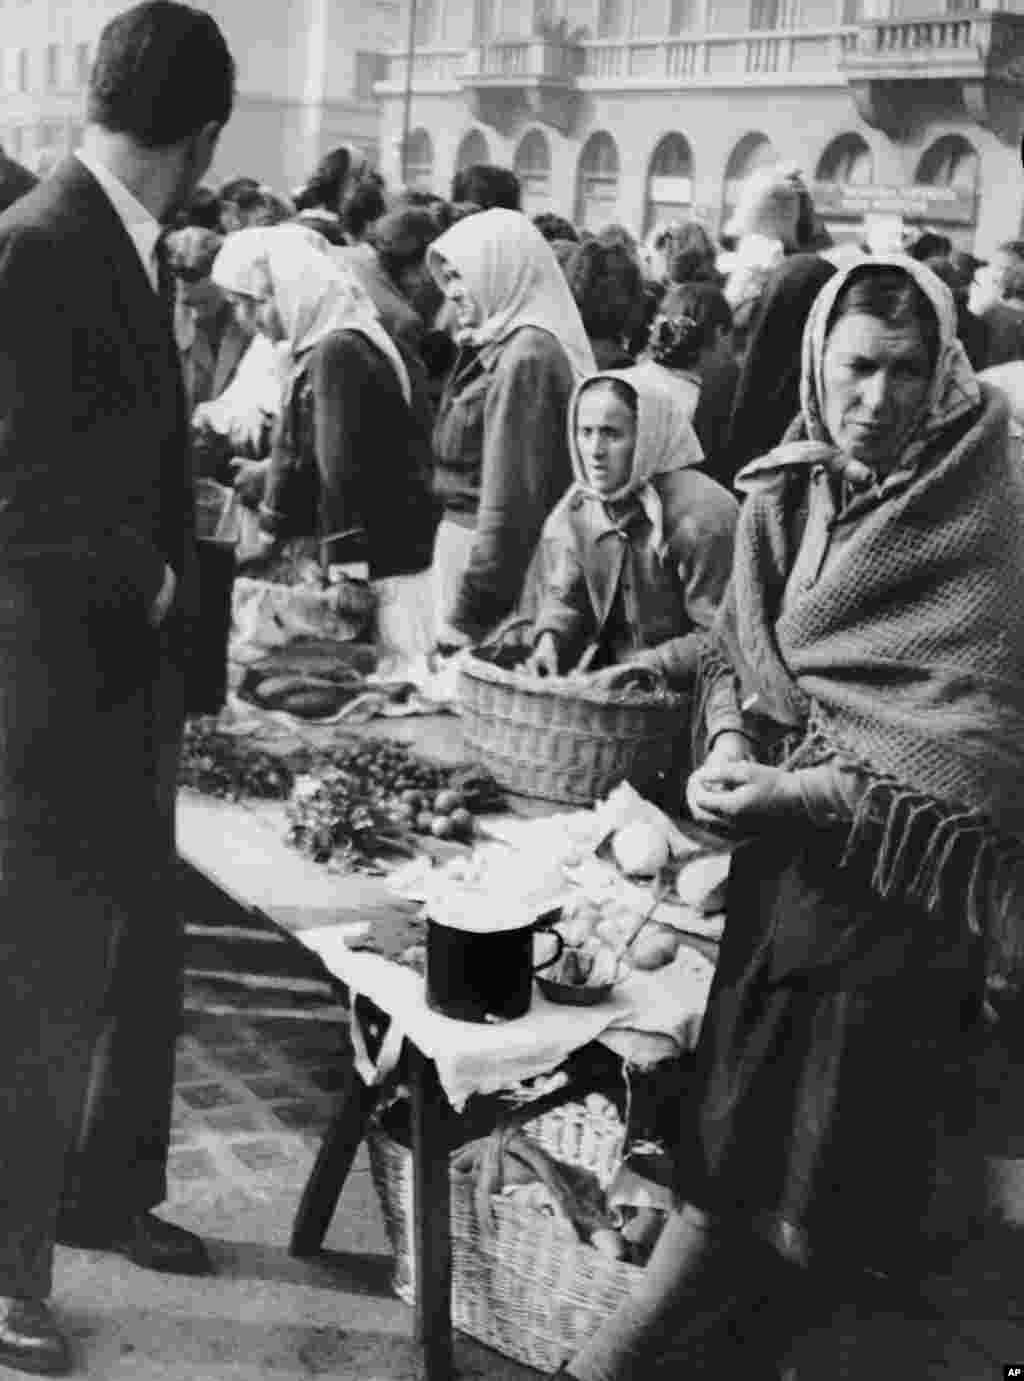 Белградски пазар во 1950 година, кога тензиите со Советскиот сојуз доведоа до трговска блокада, недостиг на храна и страв од воена инвазија. Тито во тоа време вршеше безмилосни репресии врз оние што се сметаа дека имале симпатии спрема Советскиот сојуз. Стотици беа убиени во политичката акција, а илјадници други беа испратени во логори за принудна работа. &nbsp;